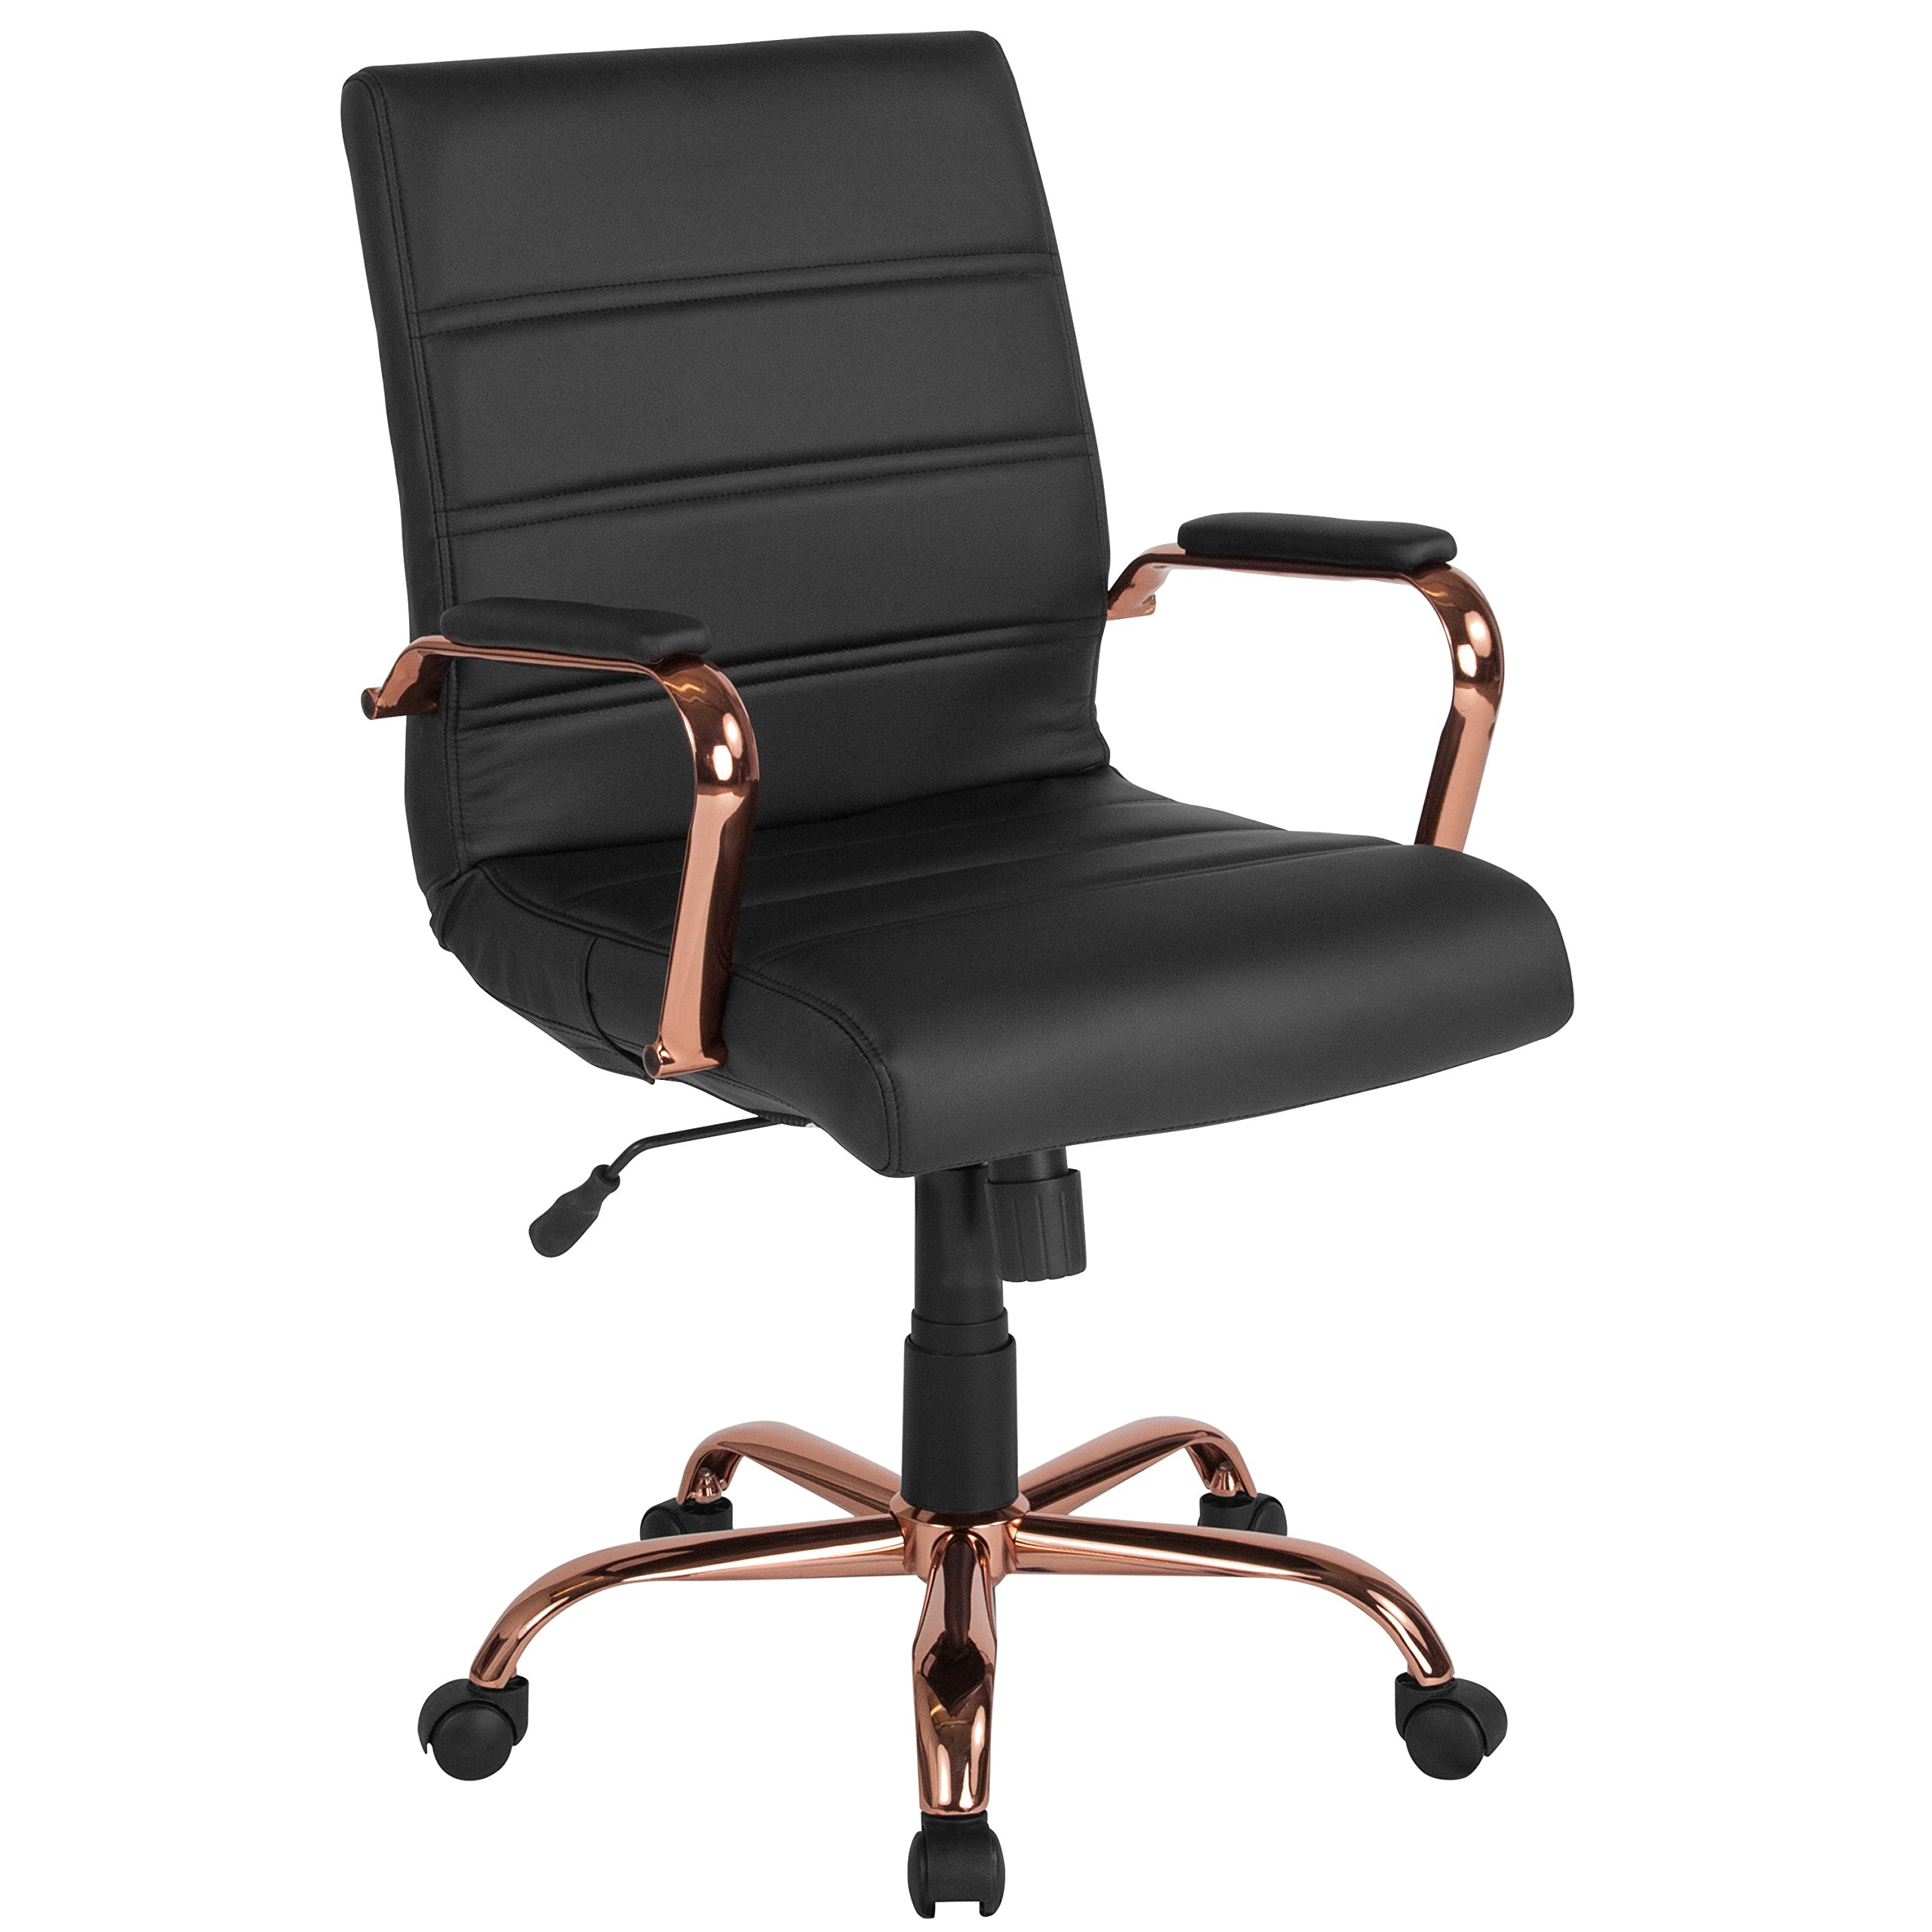 Flash Furniture Schreibtischstuhl mit mittlerer Rückenlehne – Schwarzer LederSoft Executive-Drehbürostuhl mit roségoldenem Gestell – Drehsessel